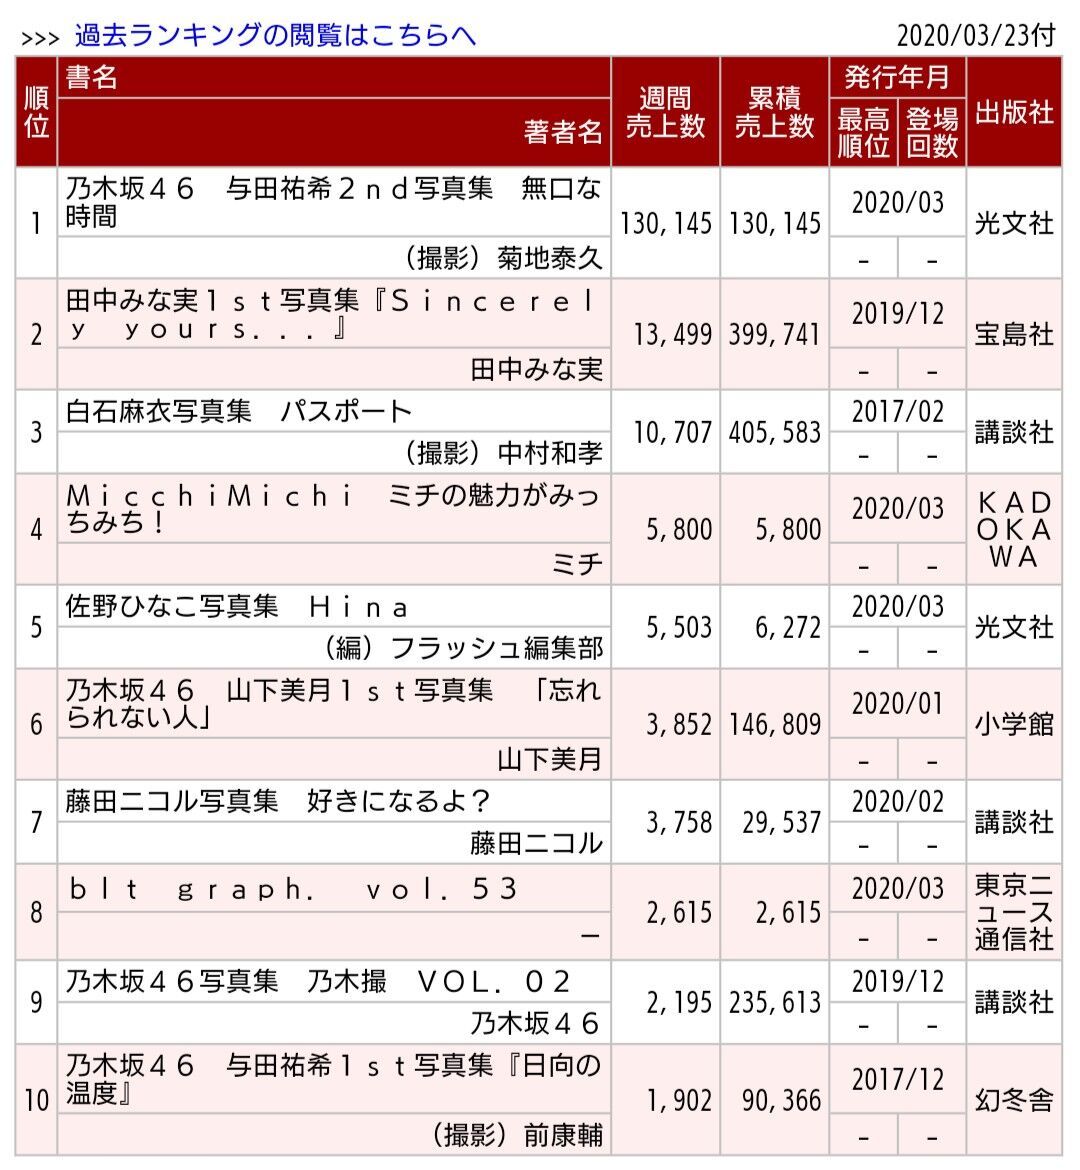 乃木坂46 与田祐希 2nd写真集が13 0万部売上て初週1位 ルゼルの情報日記 楽天ブログ